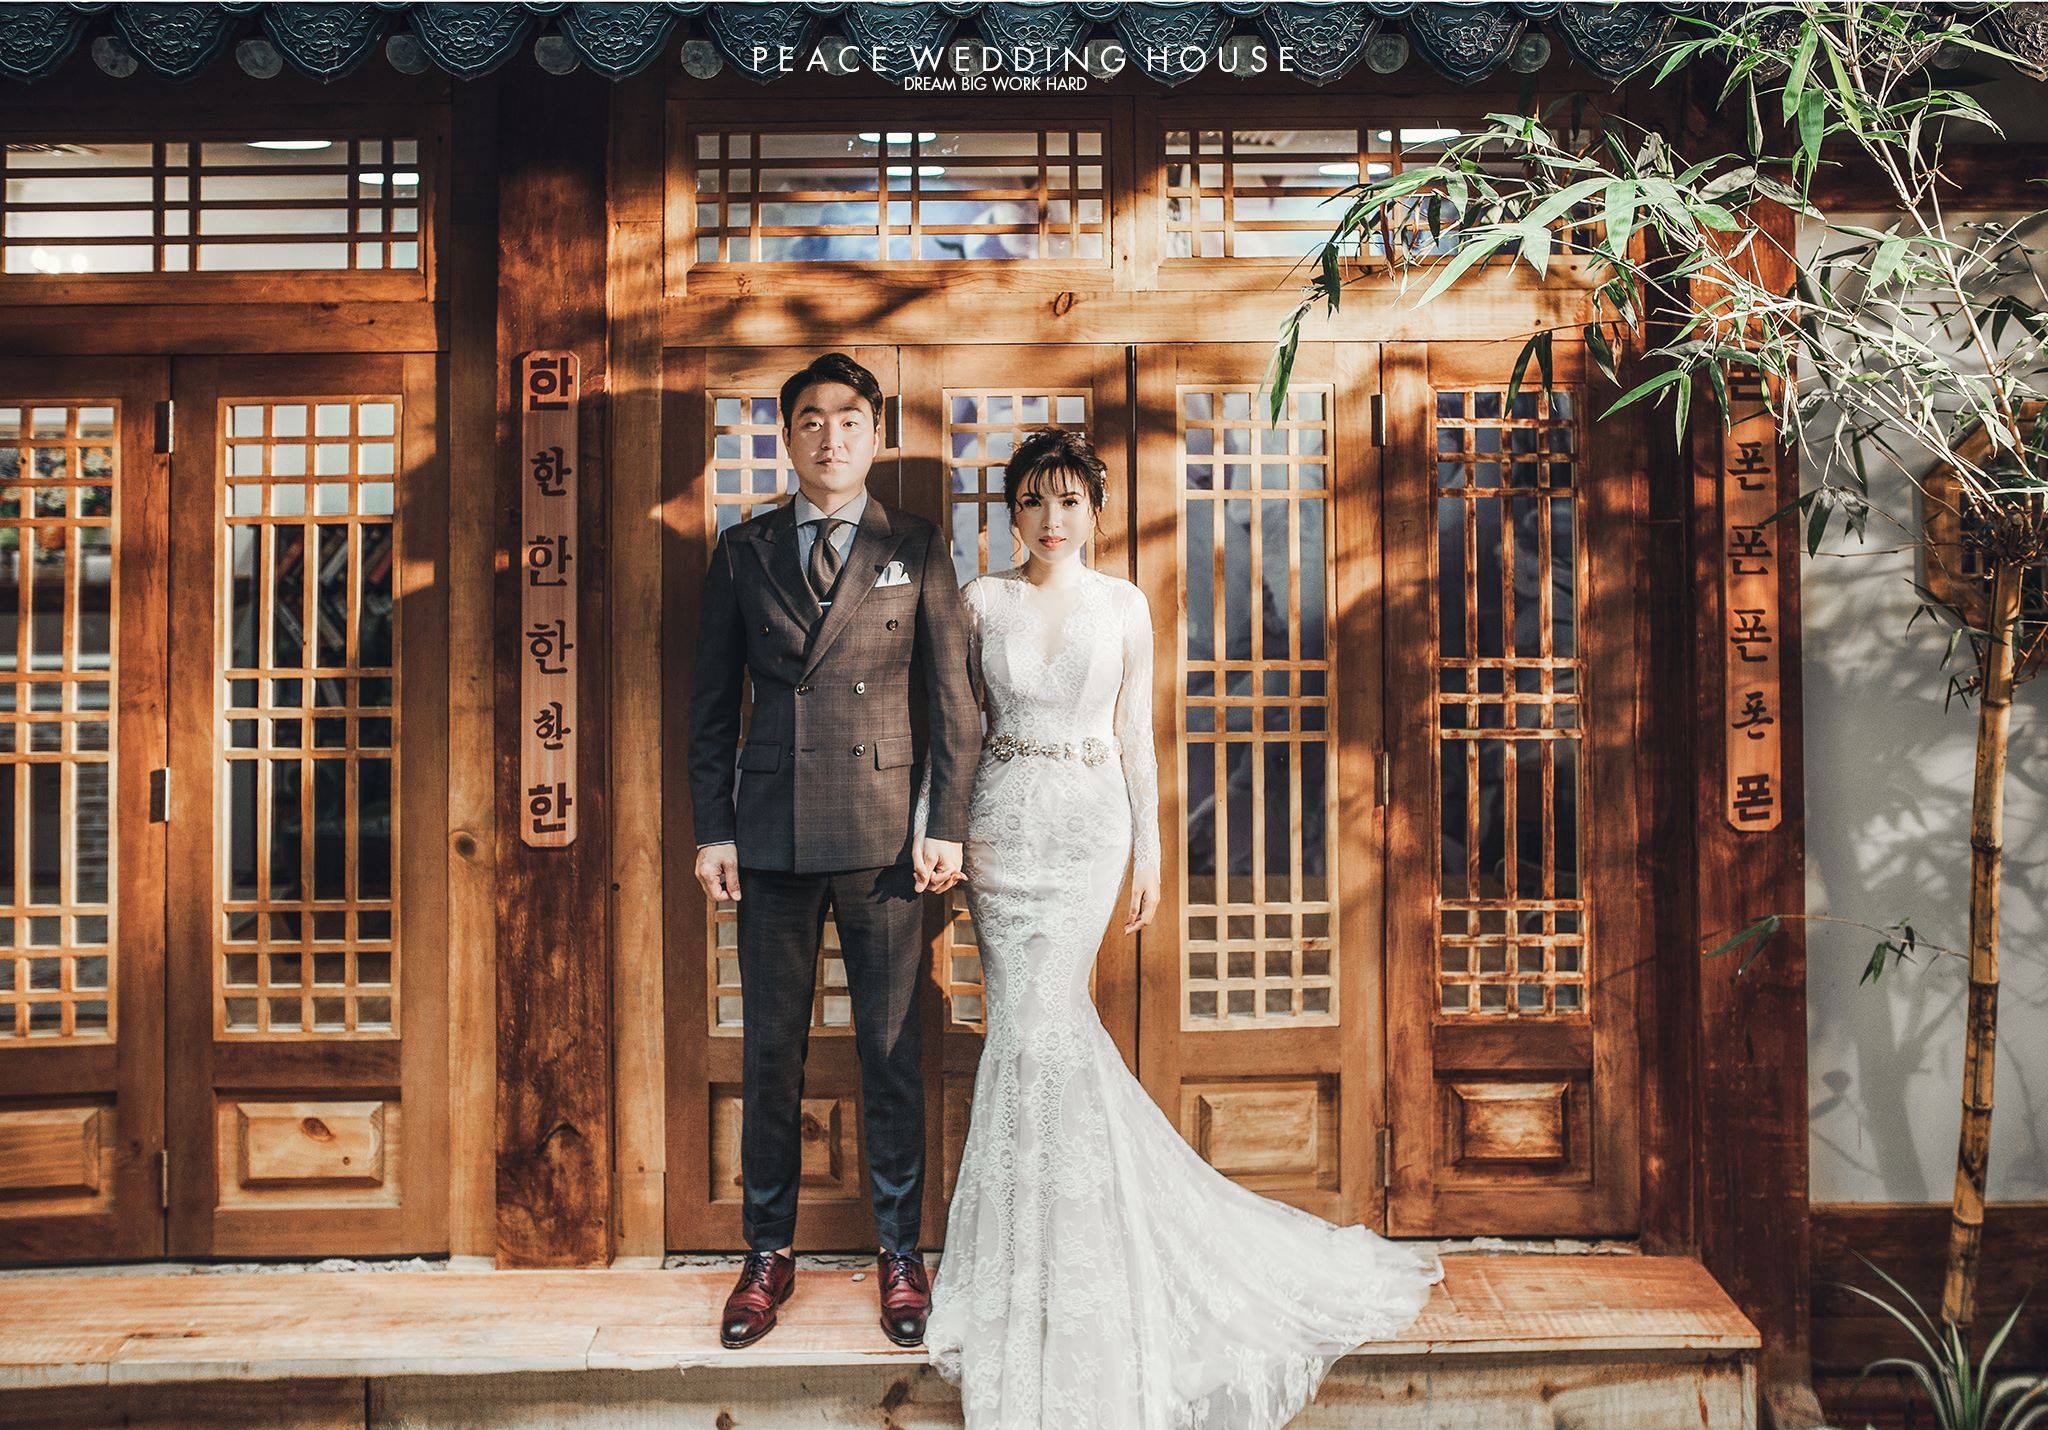 Ảnh cưới Hàn Quốc phong cách Thần Sầu - một xu hướng mới, thể hiện sự táo bạo và độc đáo của các cặp đôi. Với những bộ trang phục cầu kỳ, phối hợp chi tiết, màu sắc độc đáo, đồng hành cùng tone màu sáng, bạn sẽ tự mình khẳng định được tình yêu của mình.